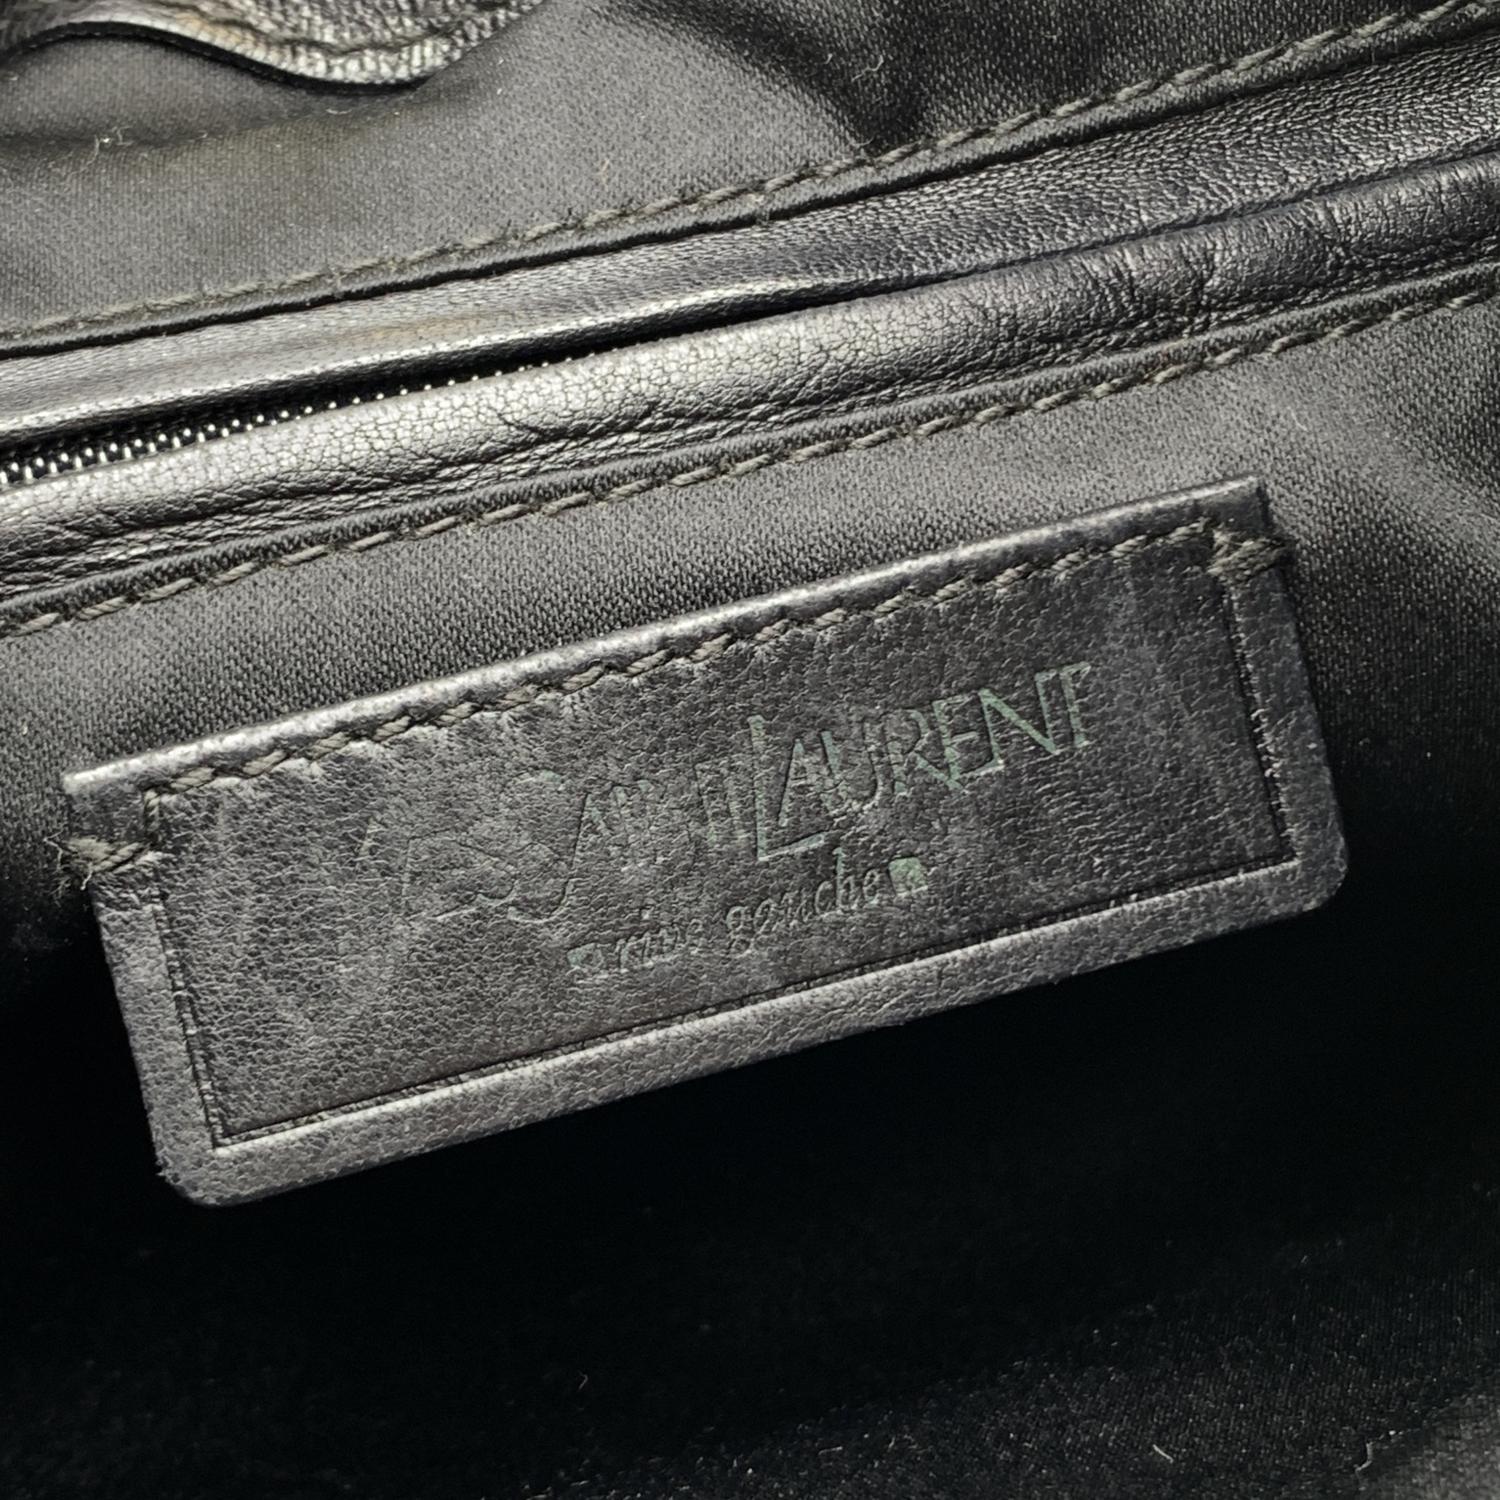 Yves Saint Laurent Black Bow Leather Hobo Tote Shoulder Bag 2